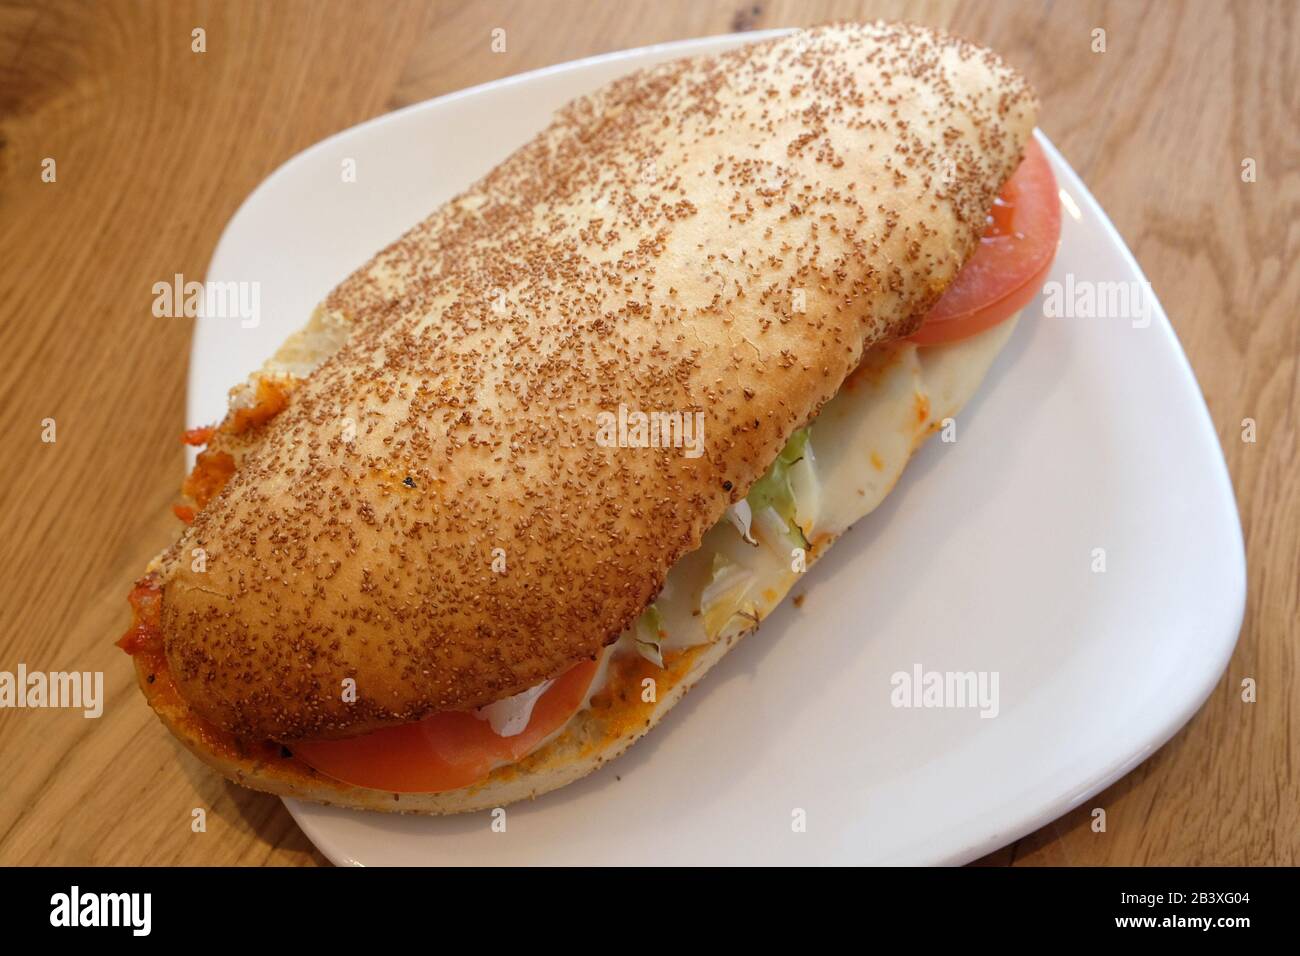 Whole wheat bread roll with tomato and mozzarella Stock Photo